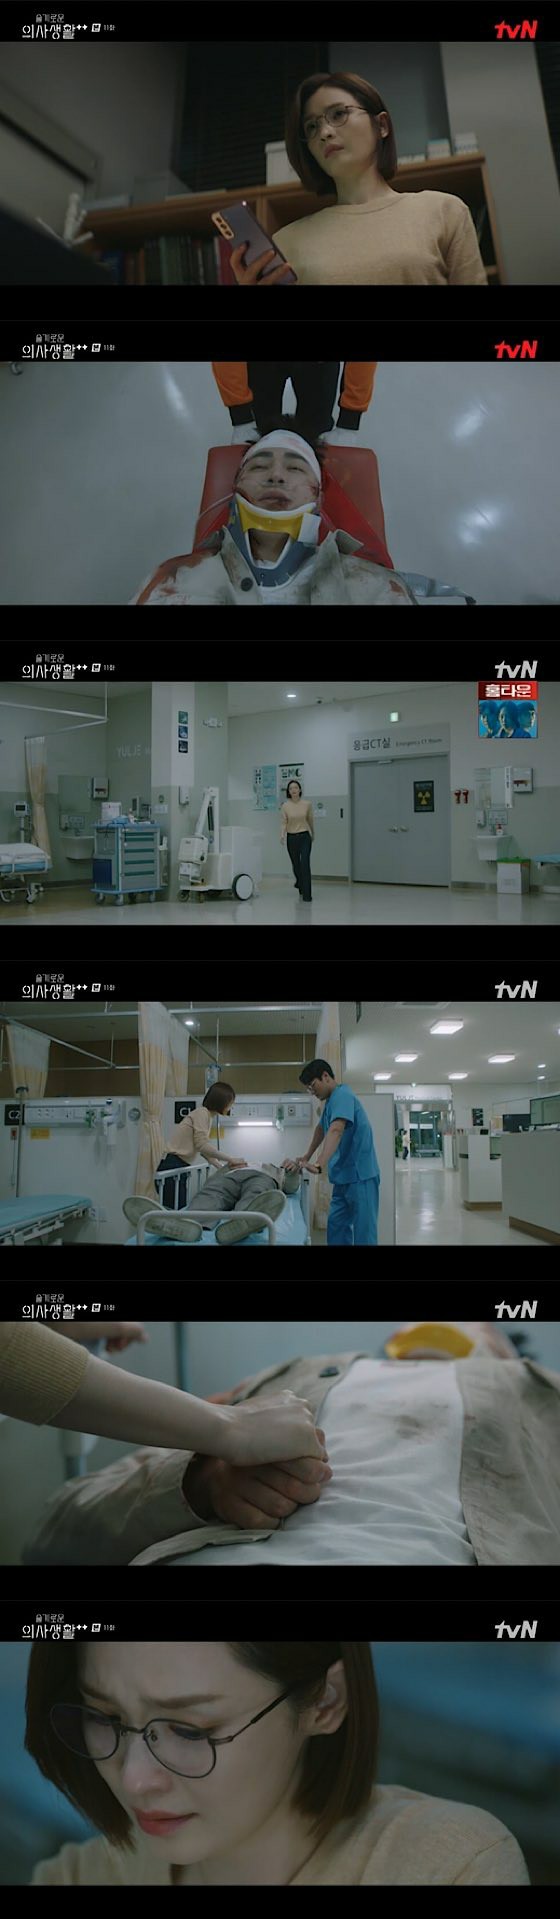 ≪ Phim truyền hình Hàn Quốc NOW≫ "Wise Doctor Life Season 2" EP11, Cho JungSeok, bị cướp vào ngày sinh nhật ... Jeon Mi-do = Tóm tắt / Netabare